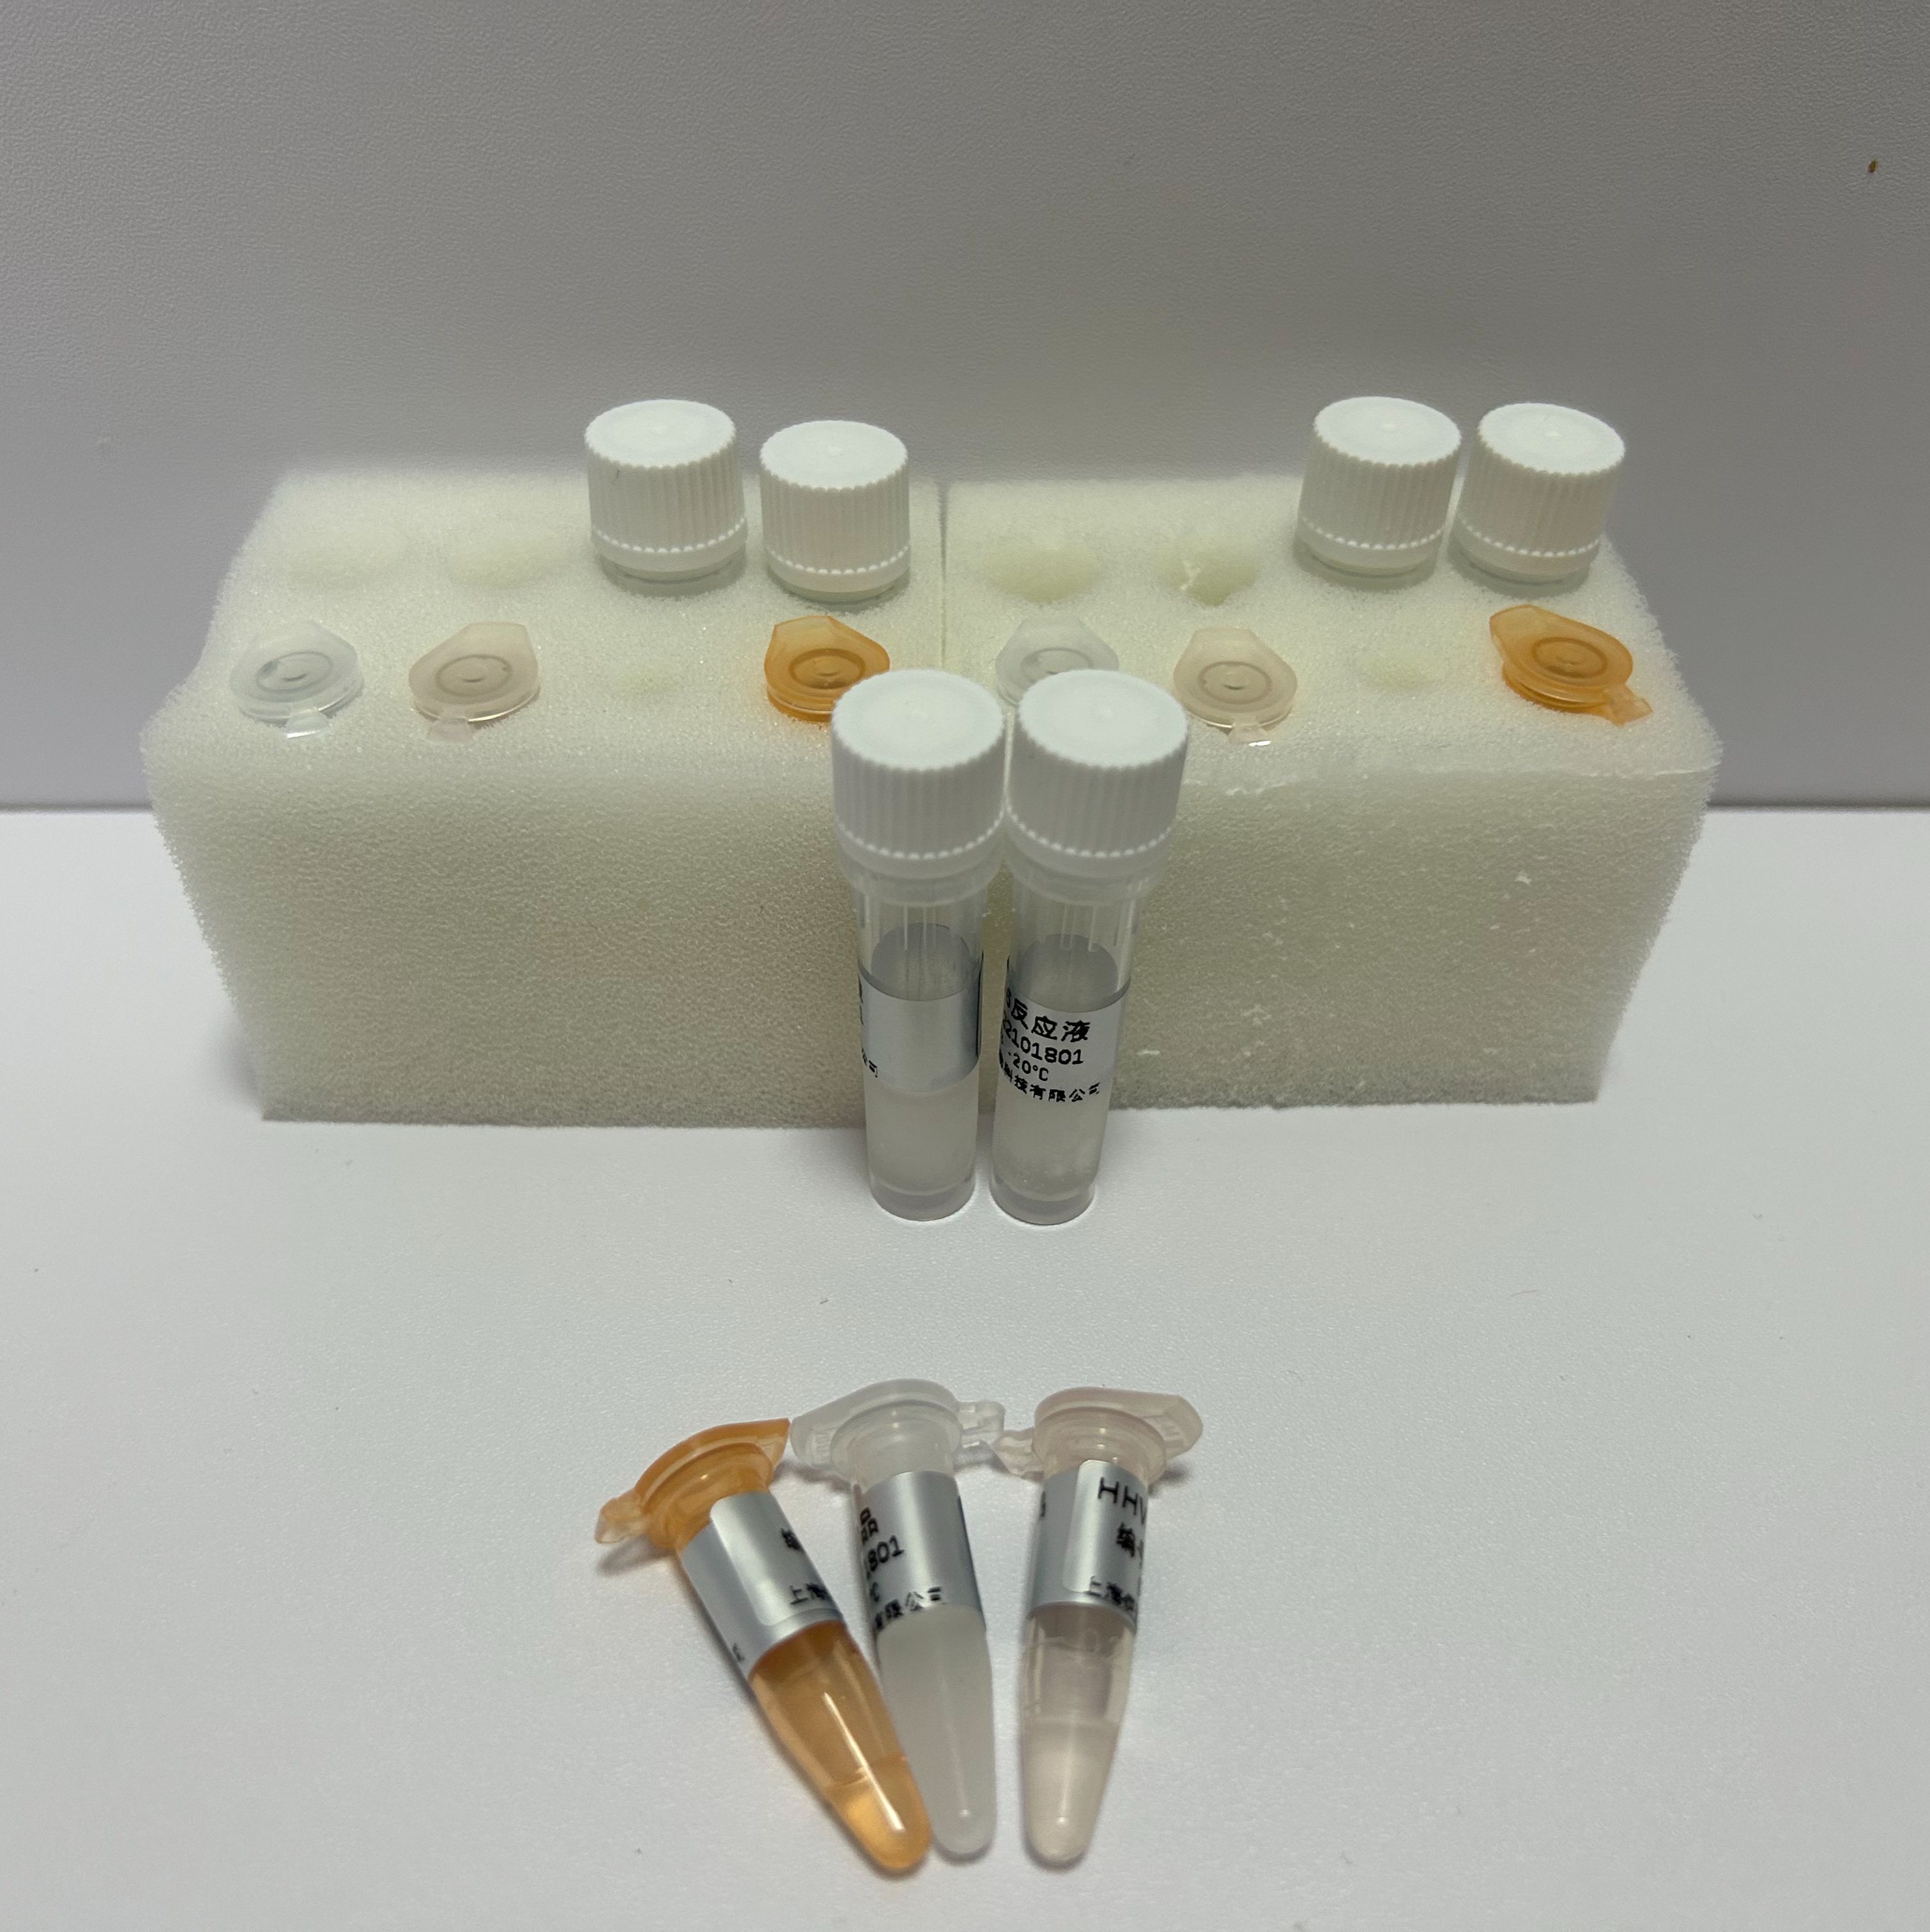 人腺病毒C5型探针法荧光定量PCR试剂盒